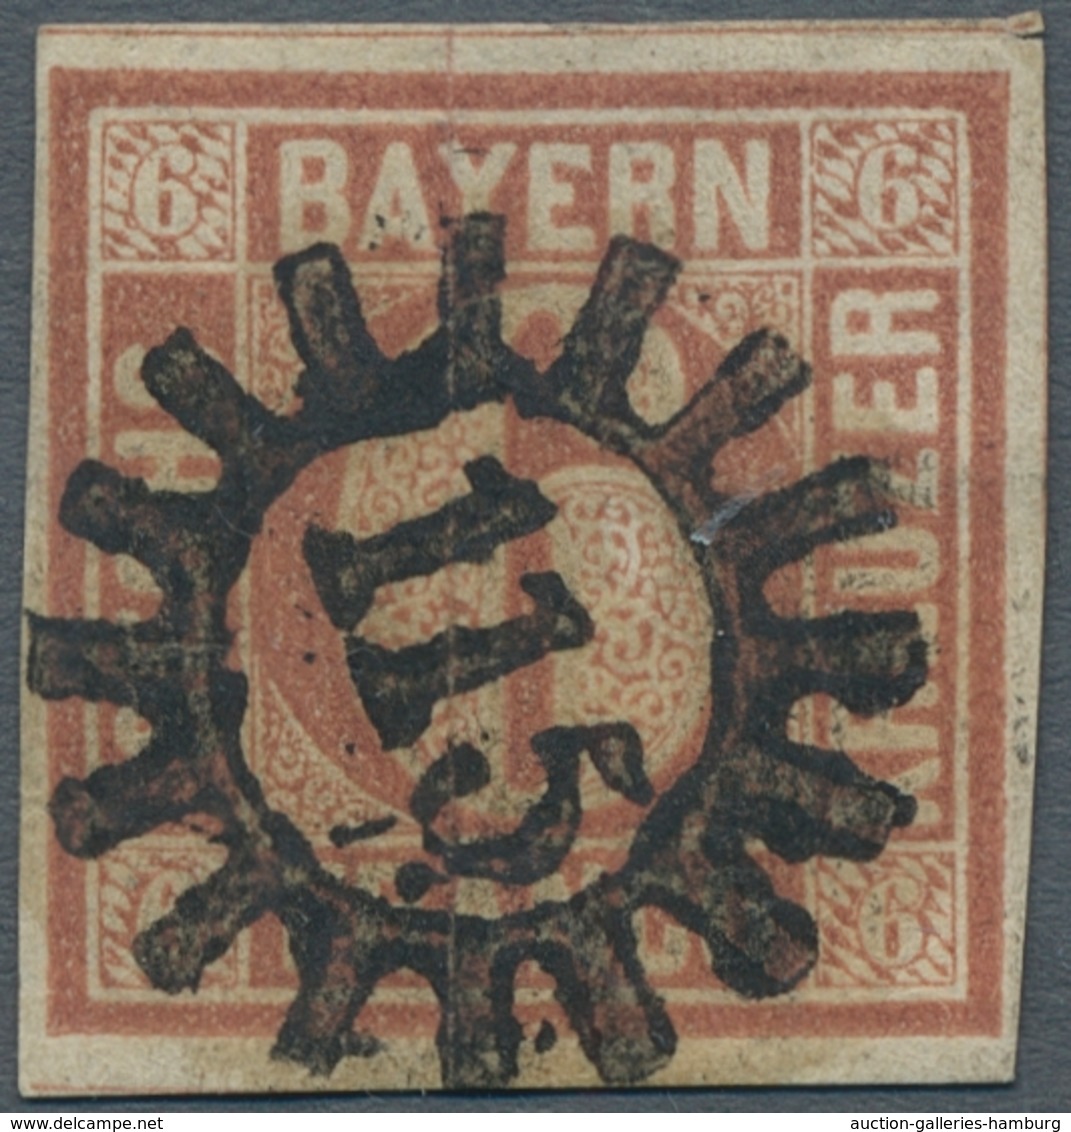 Bayern - Marken und Briefe: 1849-1920, gestempelte Sammlung im Lindner-T-Falzlosalbum, dabei die Qua